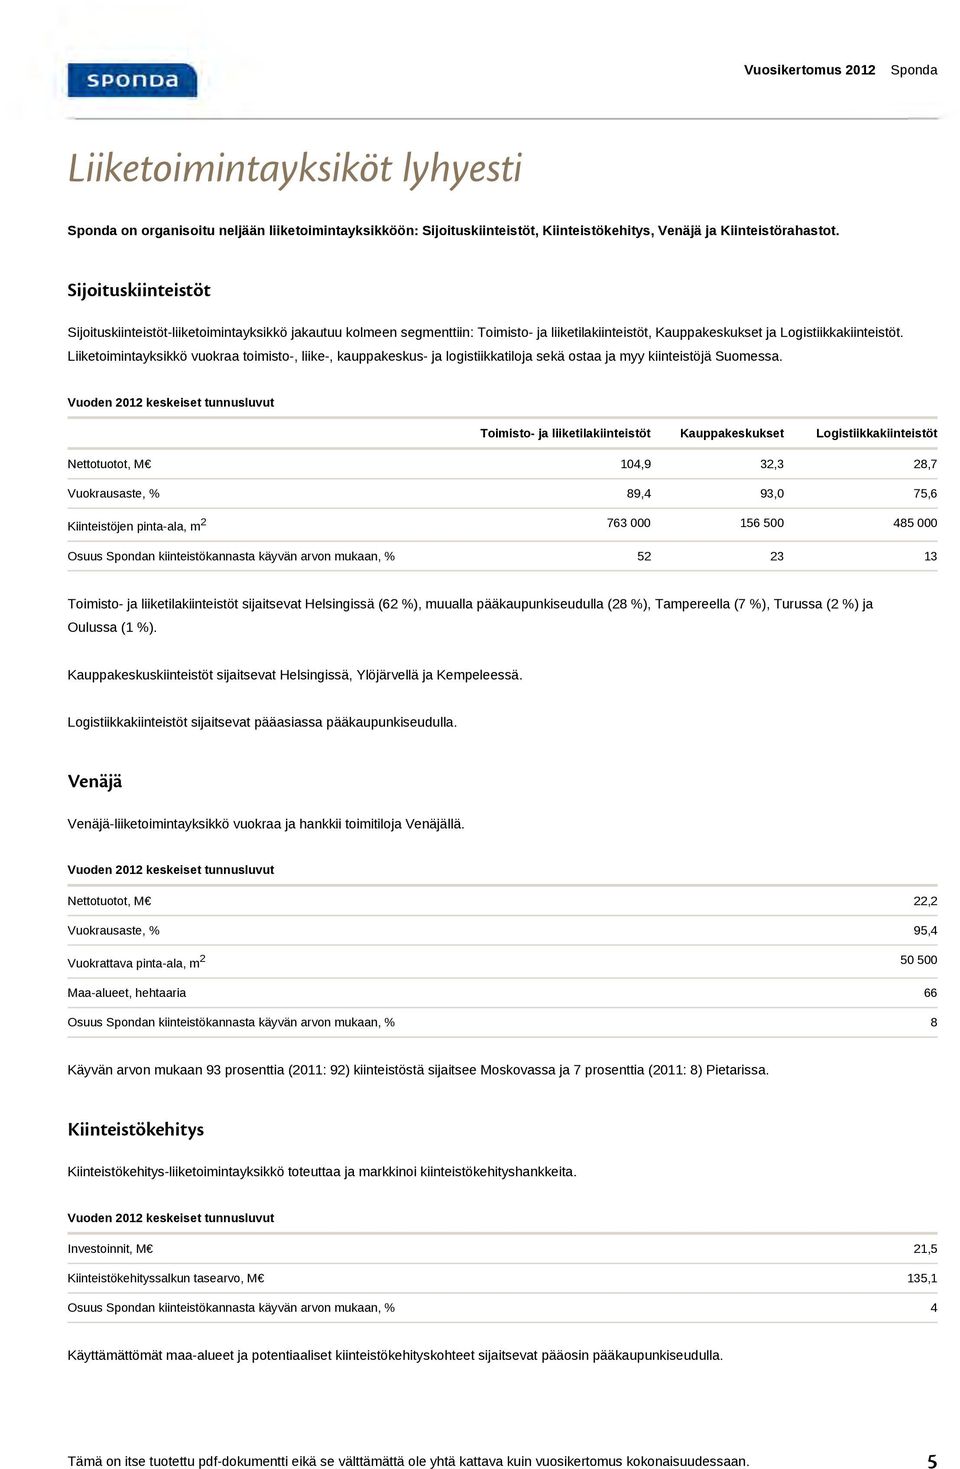 Liiketoimintayksikkö vuokraa toimisto-, liike-, kauppakeskus- ja logistiikkatiloja sekä ostaa ja myy kiinteistöjä Suomessa.